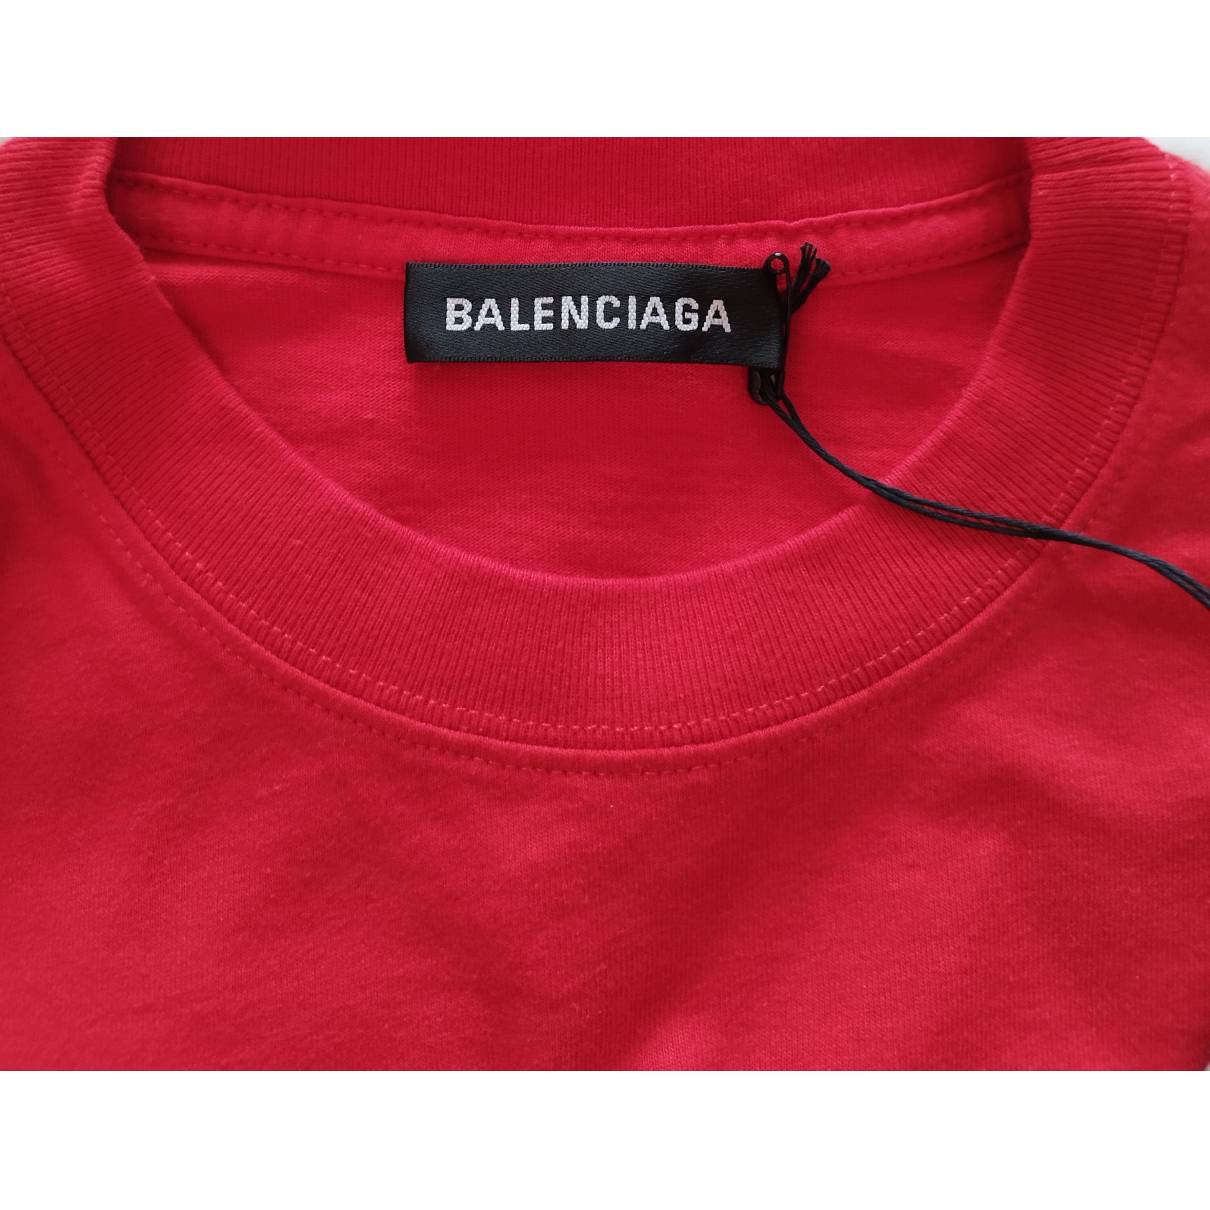 worstelen Arthur iets T-shirt Balenciaga Red size S International in Cotton - 31544272